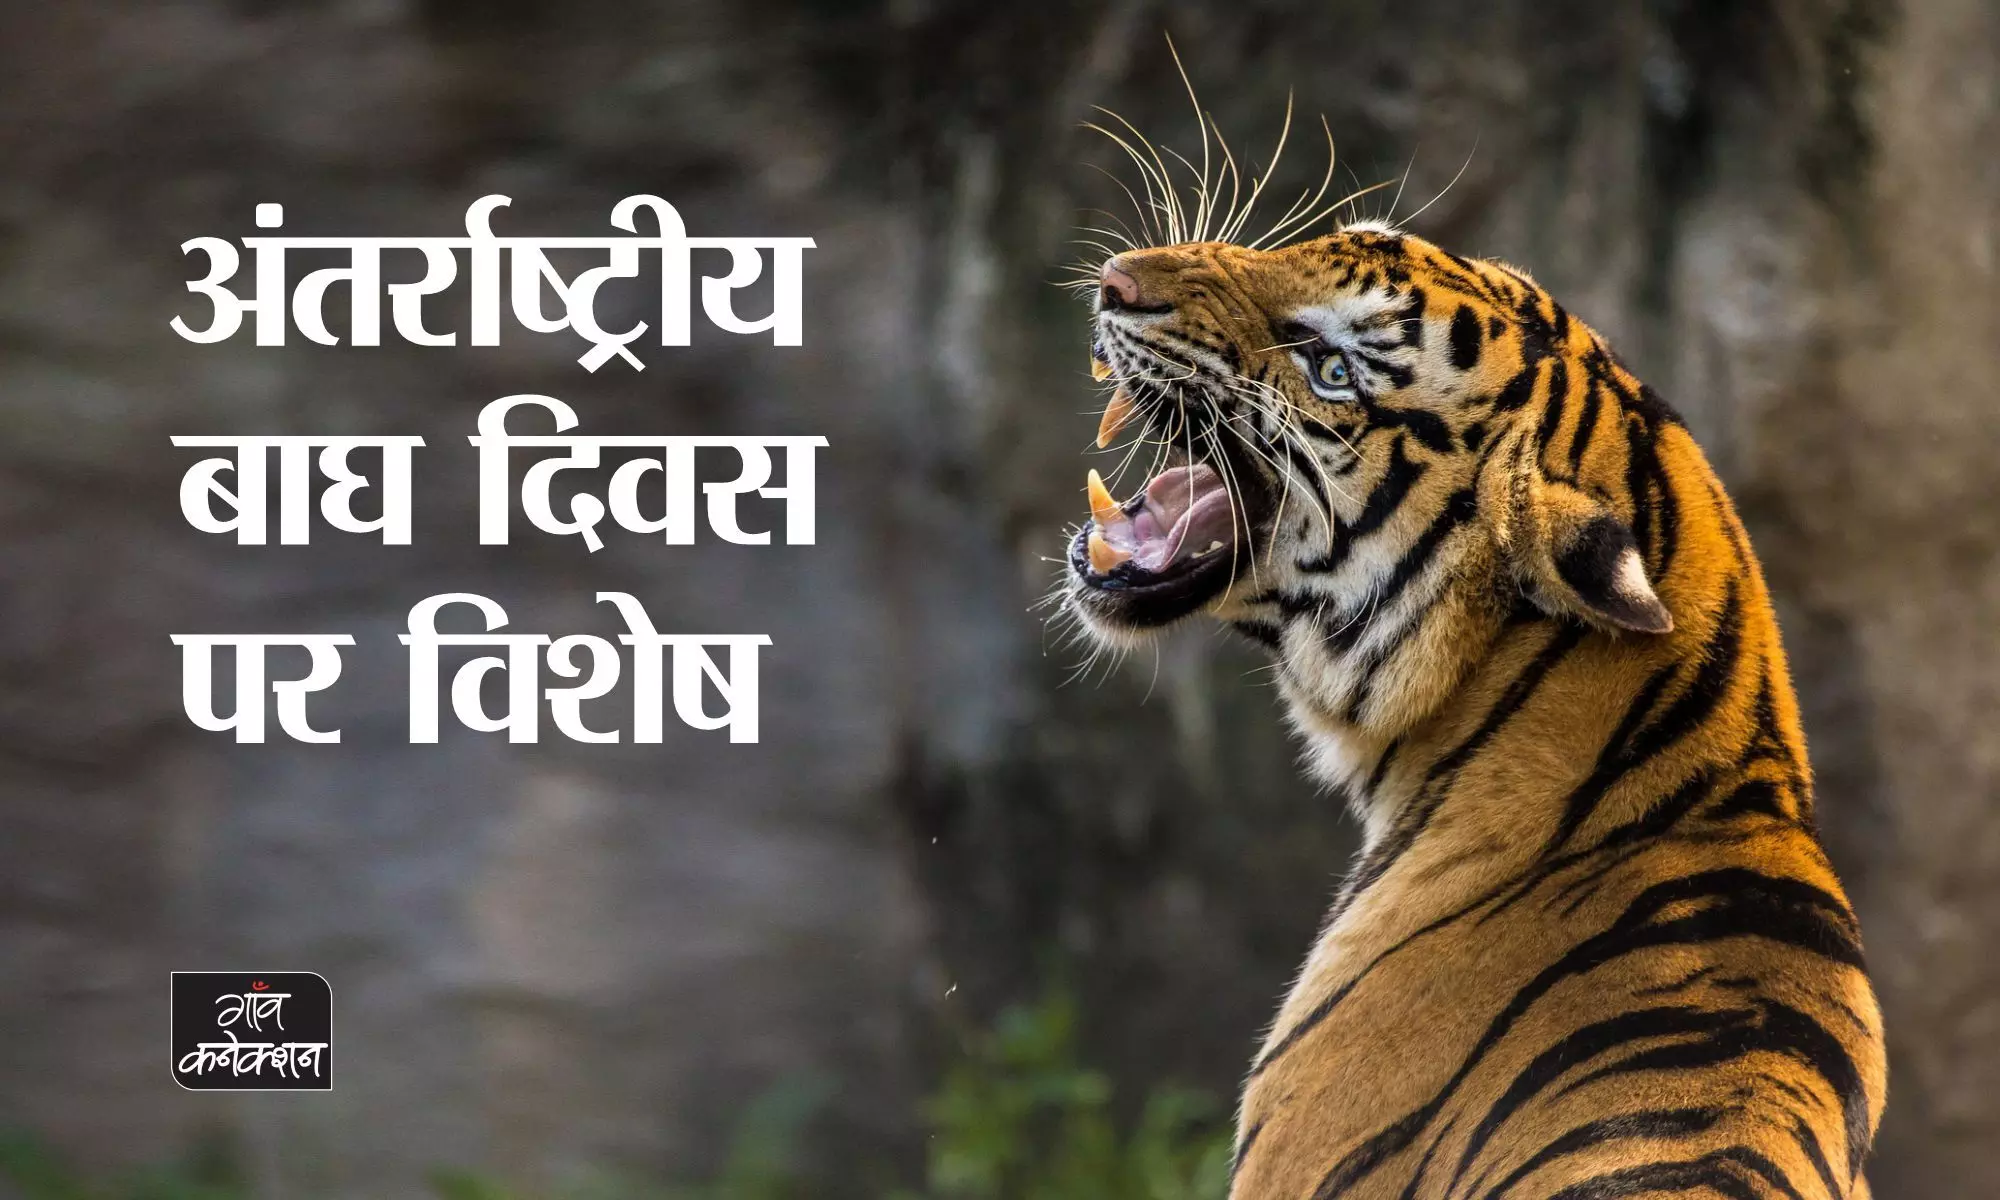 अंतर्राष्ट्रीय बाघ दिवस पर विशेष: जंगल में बिना मां के ढाई माह से जीवित बाघ शावक खुद ही सीख रहे शिकार का हुनर